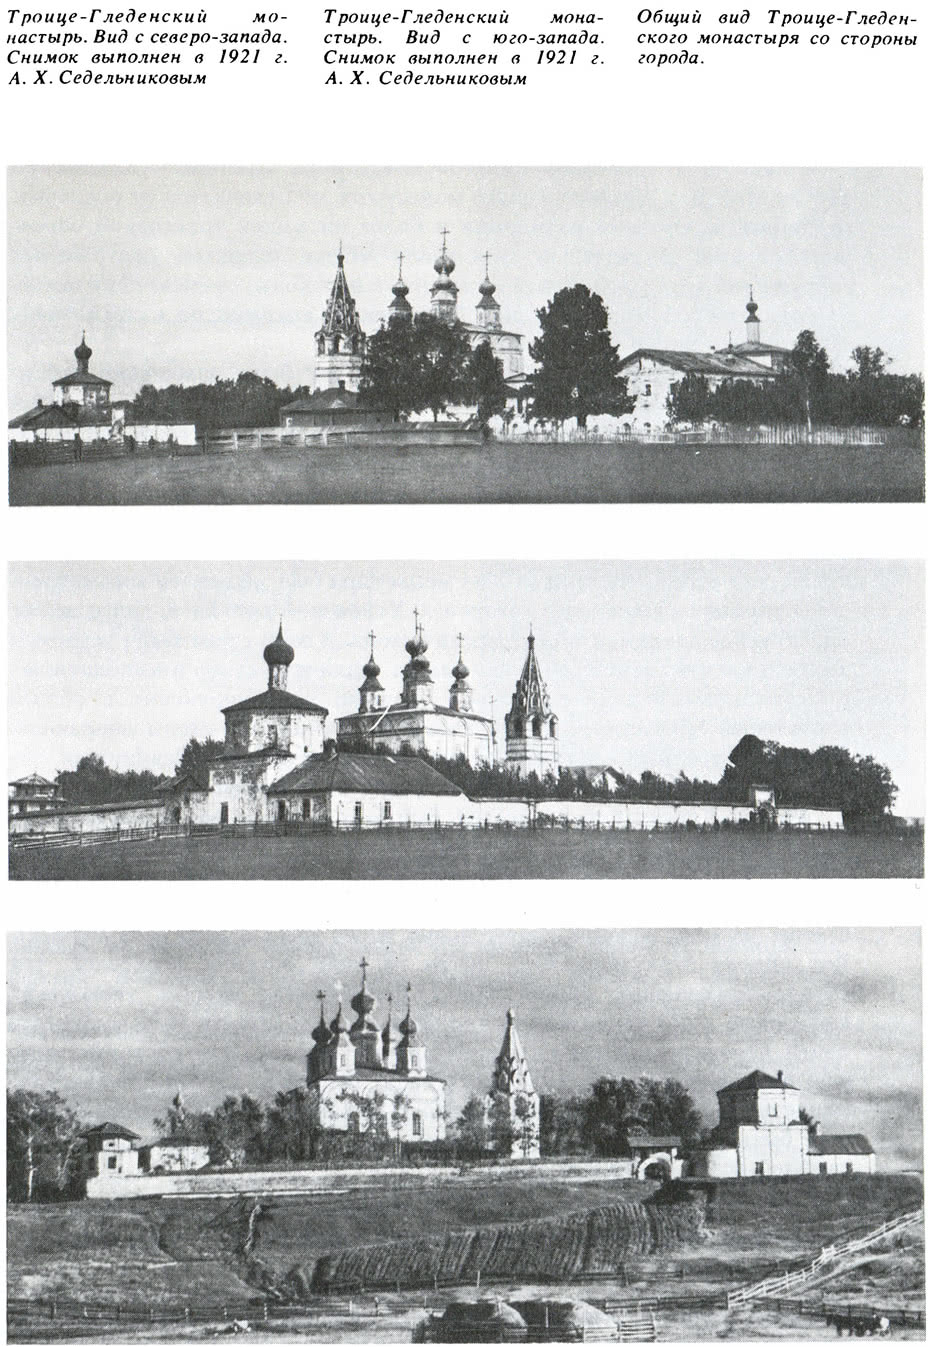 Троице-Гледенский монастырь. Вид с северо-запада. 1921 г.